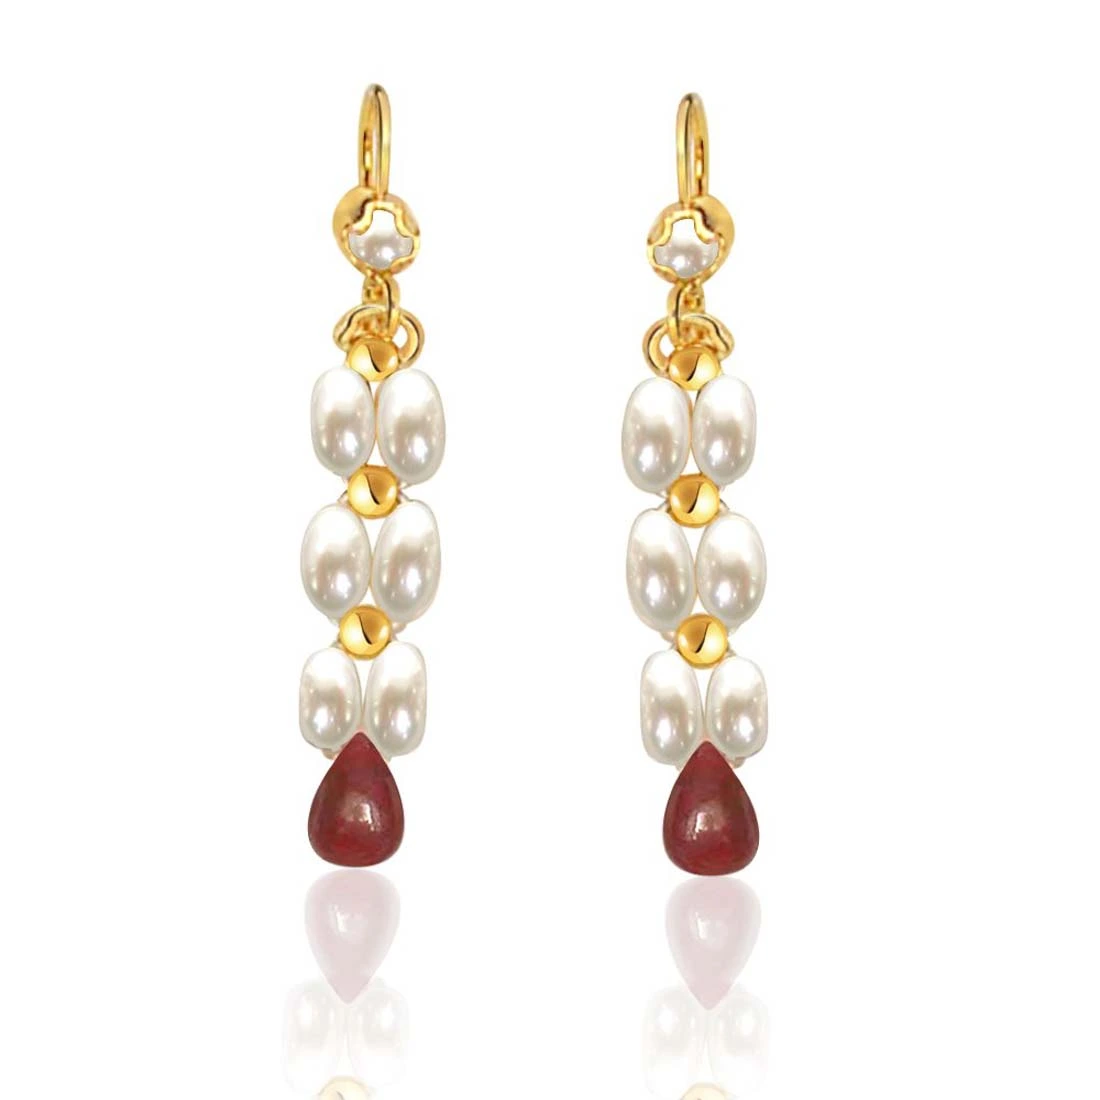 Dangling Real Rice Pearl, Drop Ruby Earrings for Women (SE126)